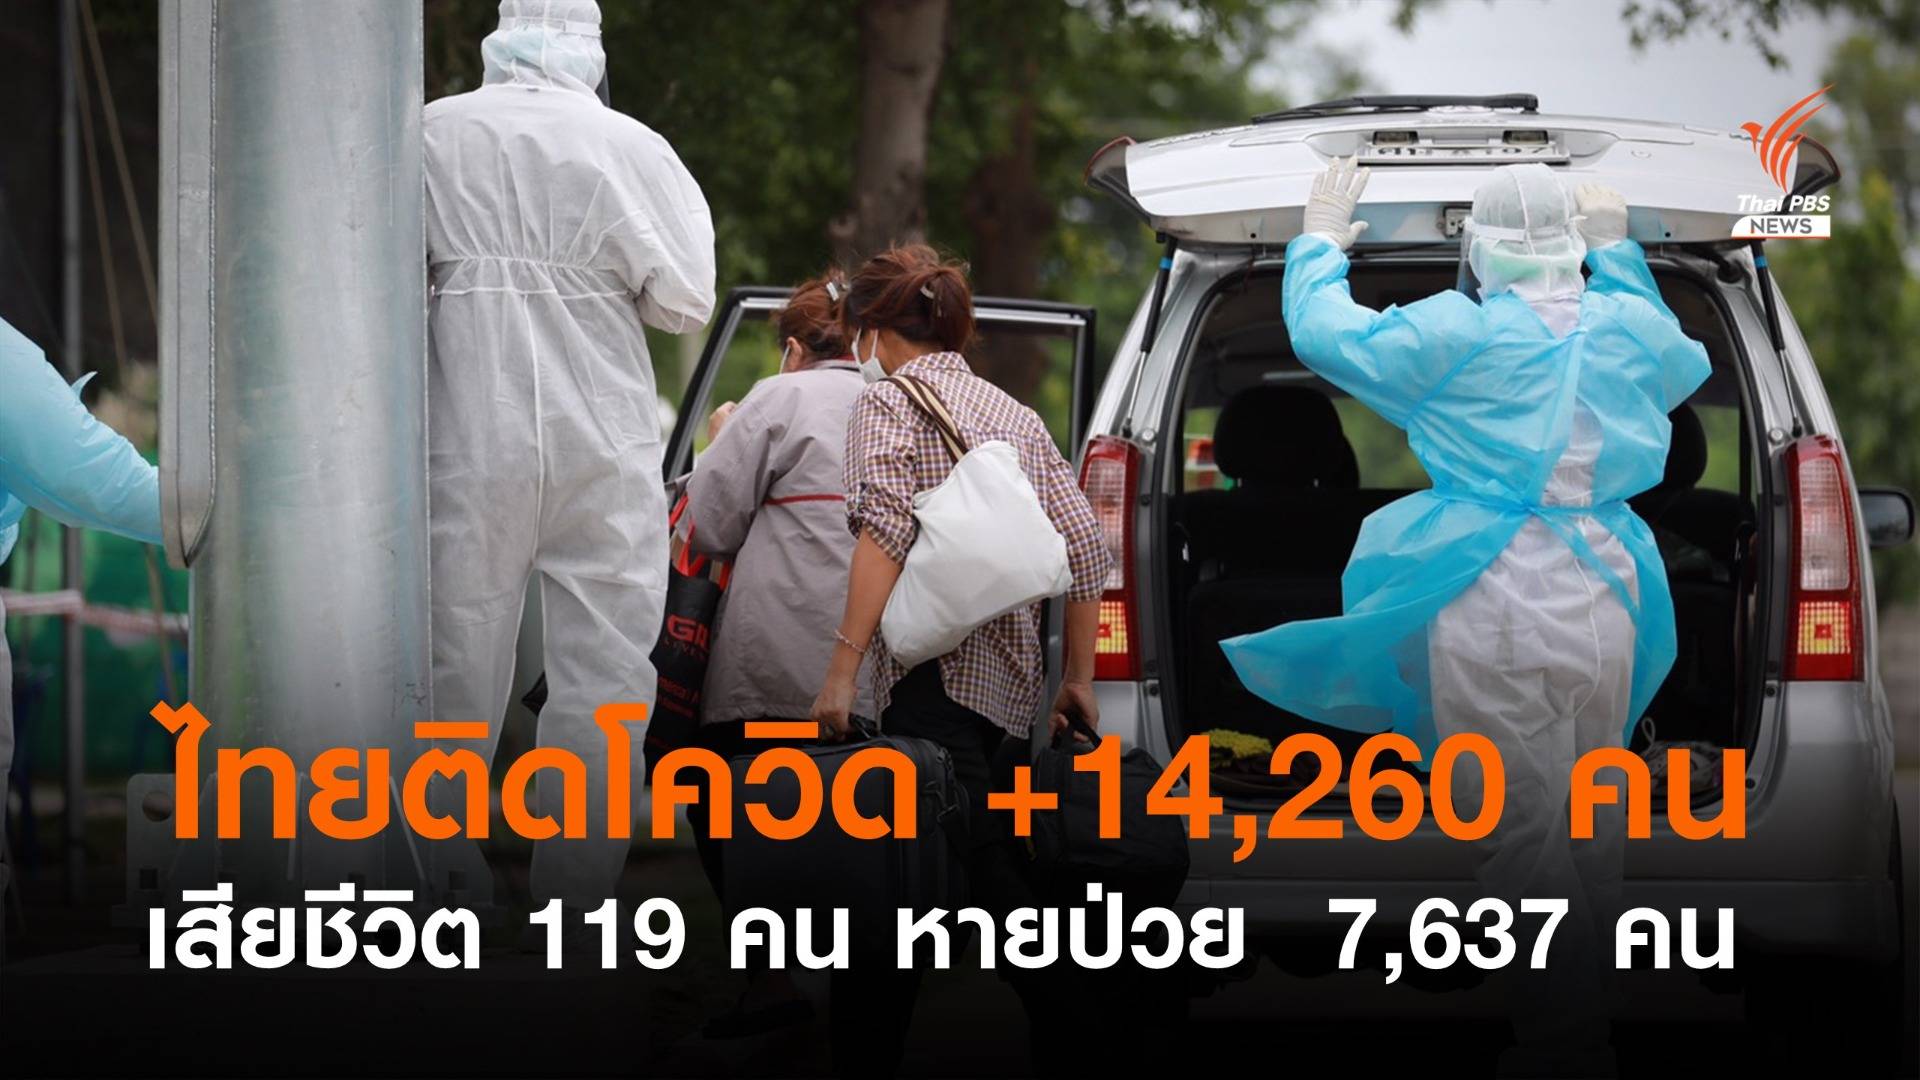 ยอดติดเชื้อโควิดในไทยเพิ่ม 14,260 คน เสียชีวิต 119 คน หายป่วย 7,637 คน